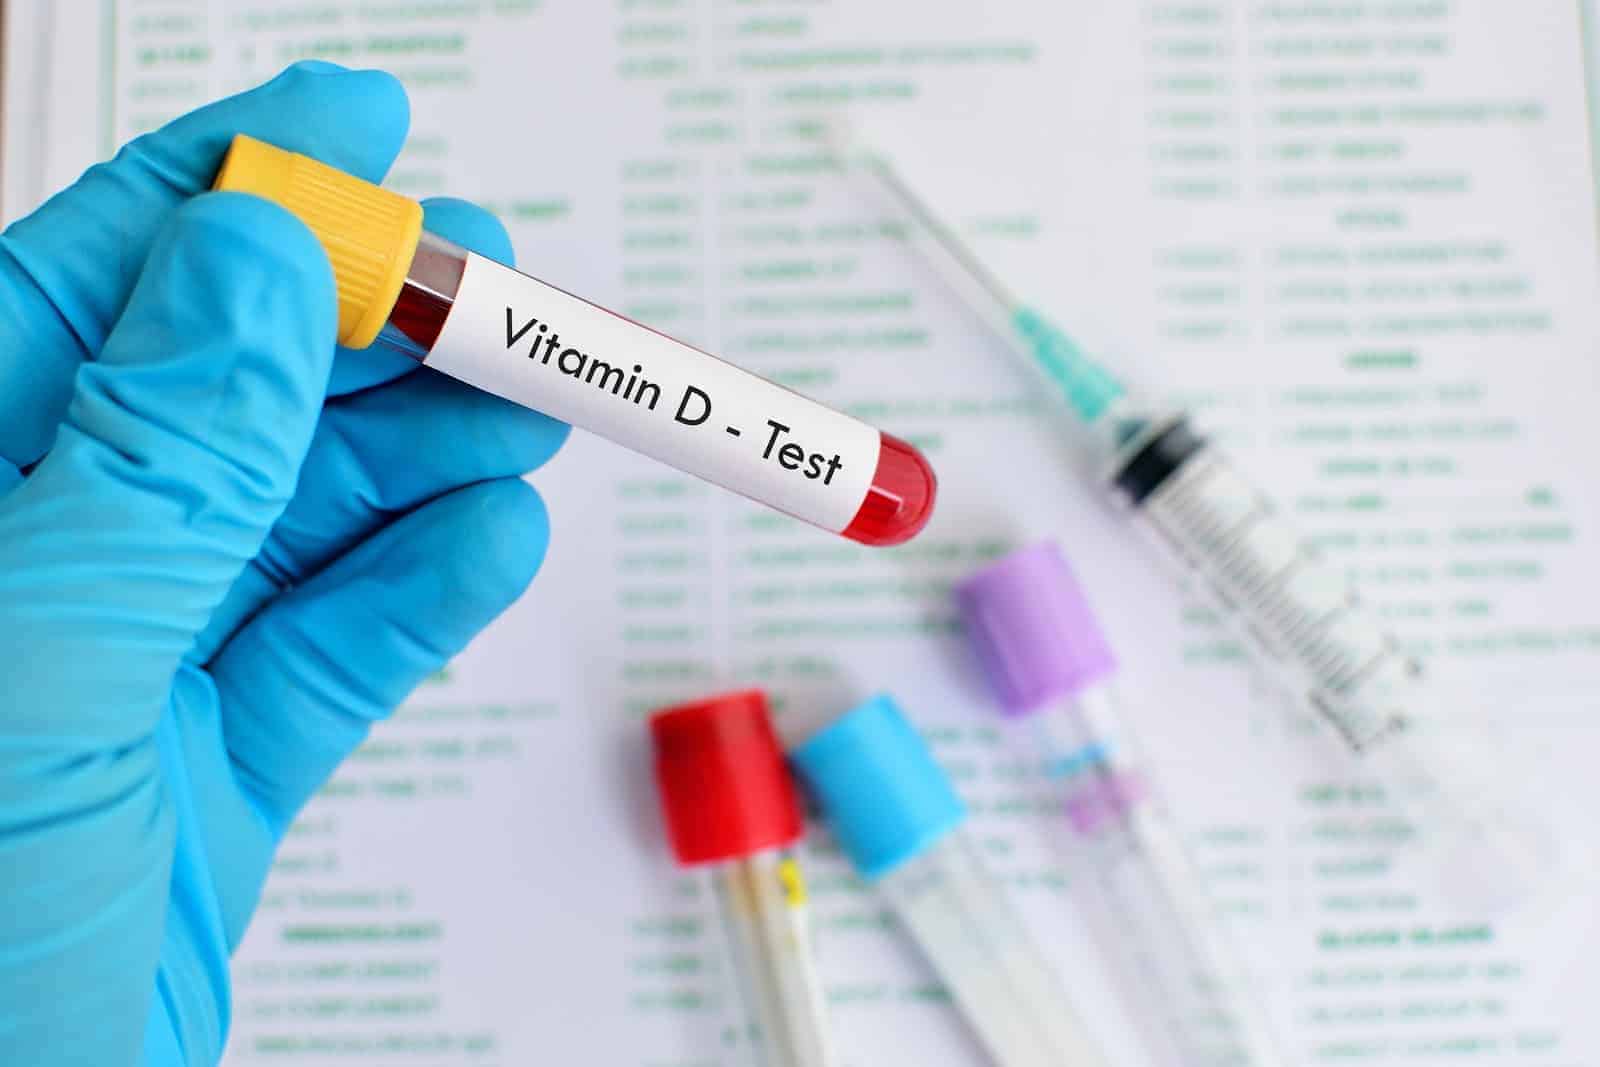 Vitamin D blood test